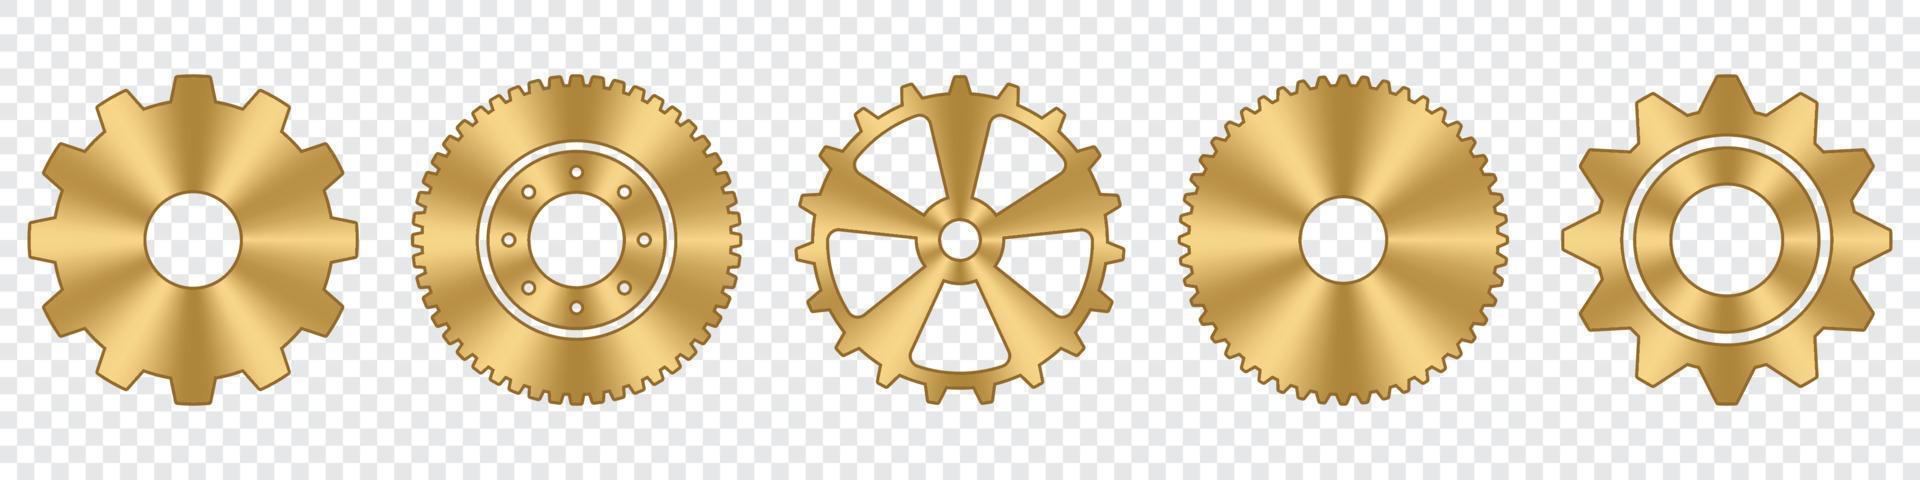 jeu de roues dentées. collection de roues dentées en métal doré. icônes industrielles. ensemble d'icônes vectorielles de réglage d'engrenage. illustration vectorielle vecteur